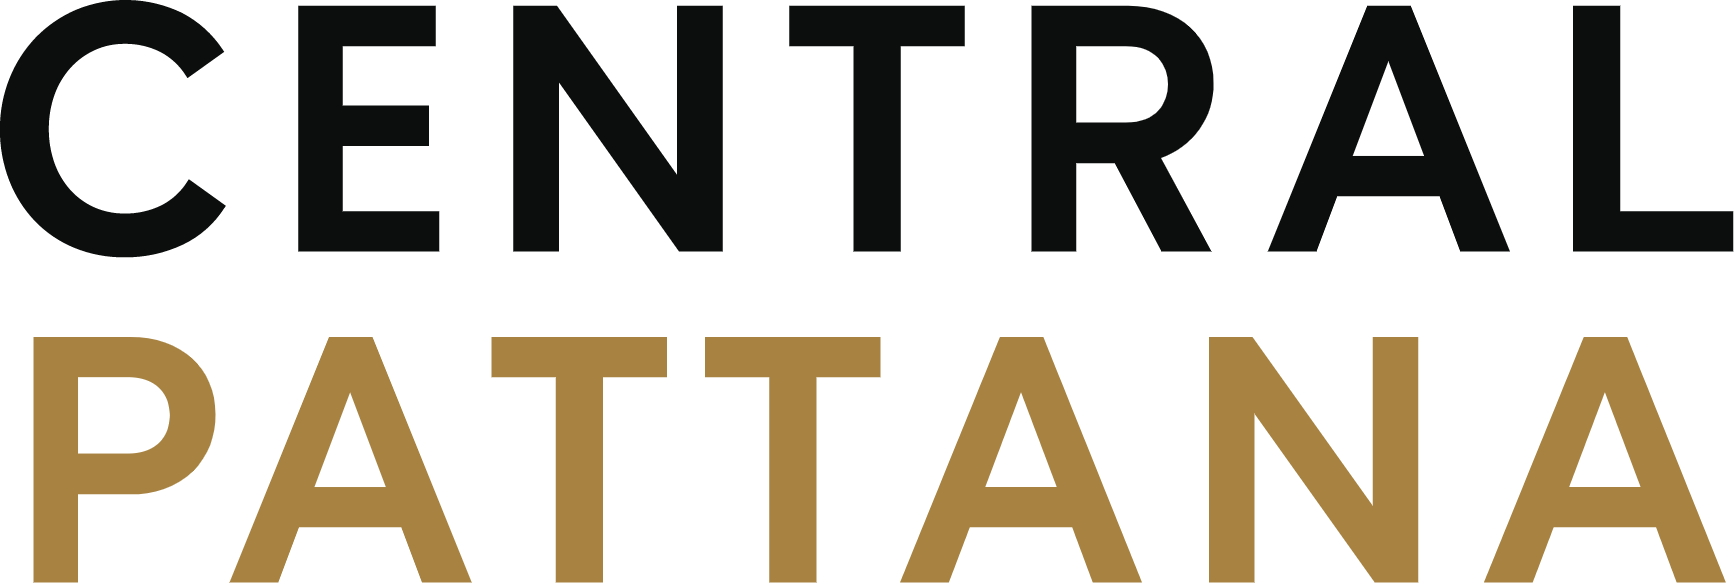 Central Pattana
 Logo (transparentes PNG)